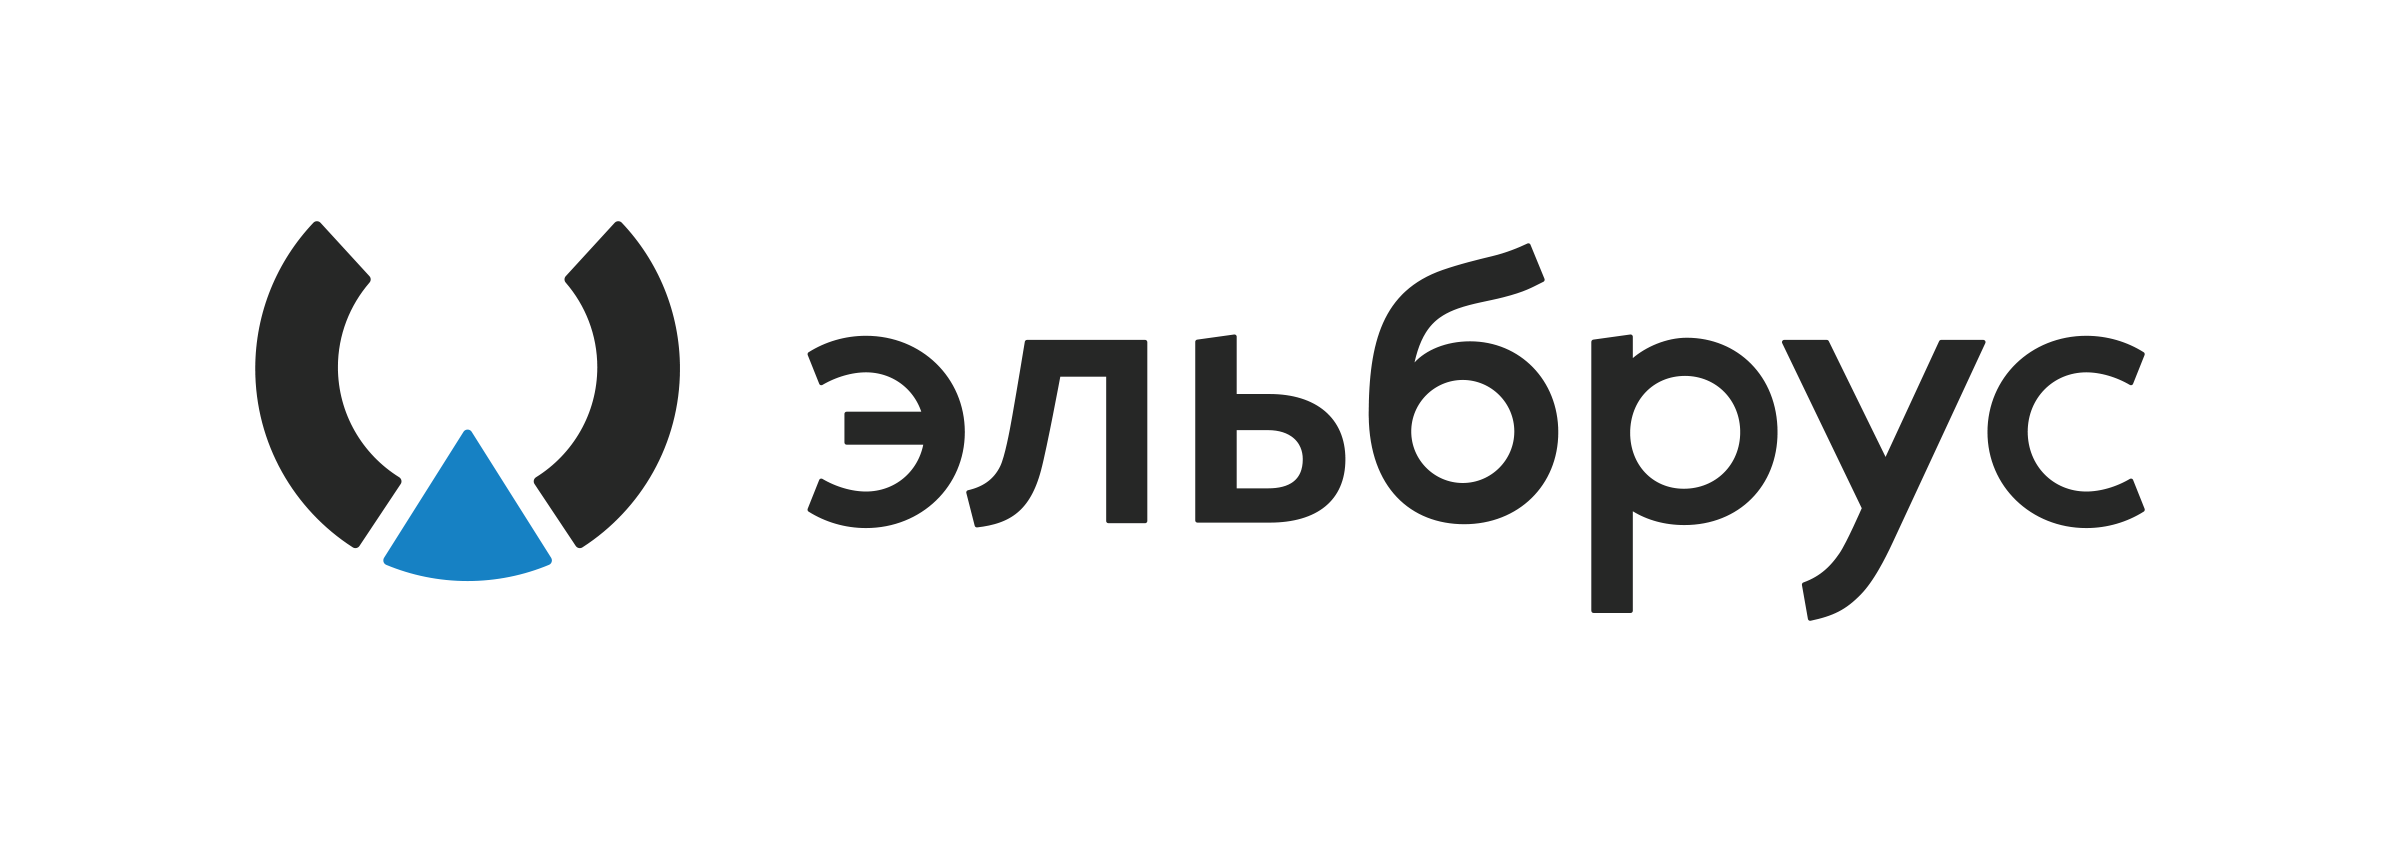 Эльбрус процессор логотип. АО МЦСТ Эльбрус. Операционная система Эльбрус логотип. МЦСТ Эльбрус логотип. Эльбрус логотип